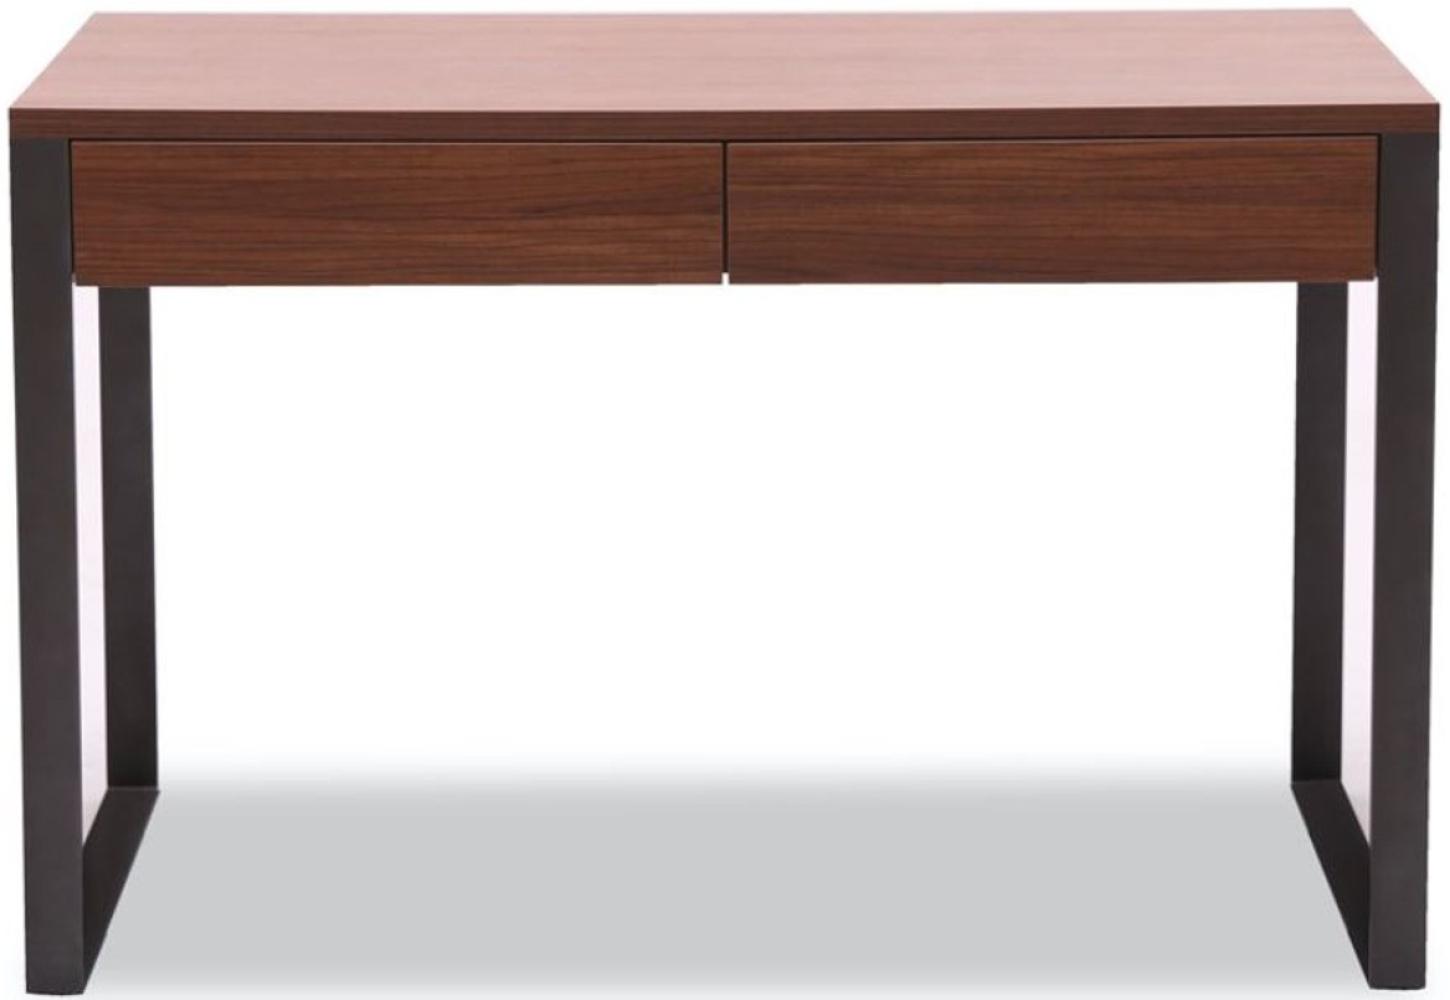 Casa Padrino Luxus Schreibtisch 120 x 60 x H. 78 cm - Verschiedene Farben - Moderner Schreibtisch mit 2 Schubladen und pulverbeschichteten Stahlbeinen Bild 1